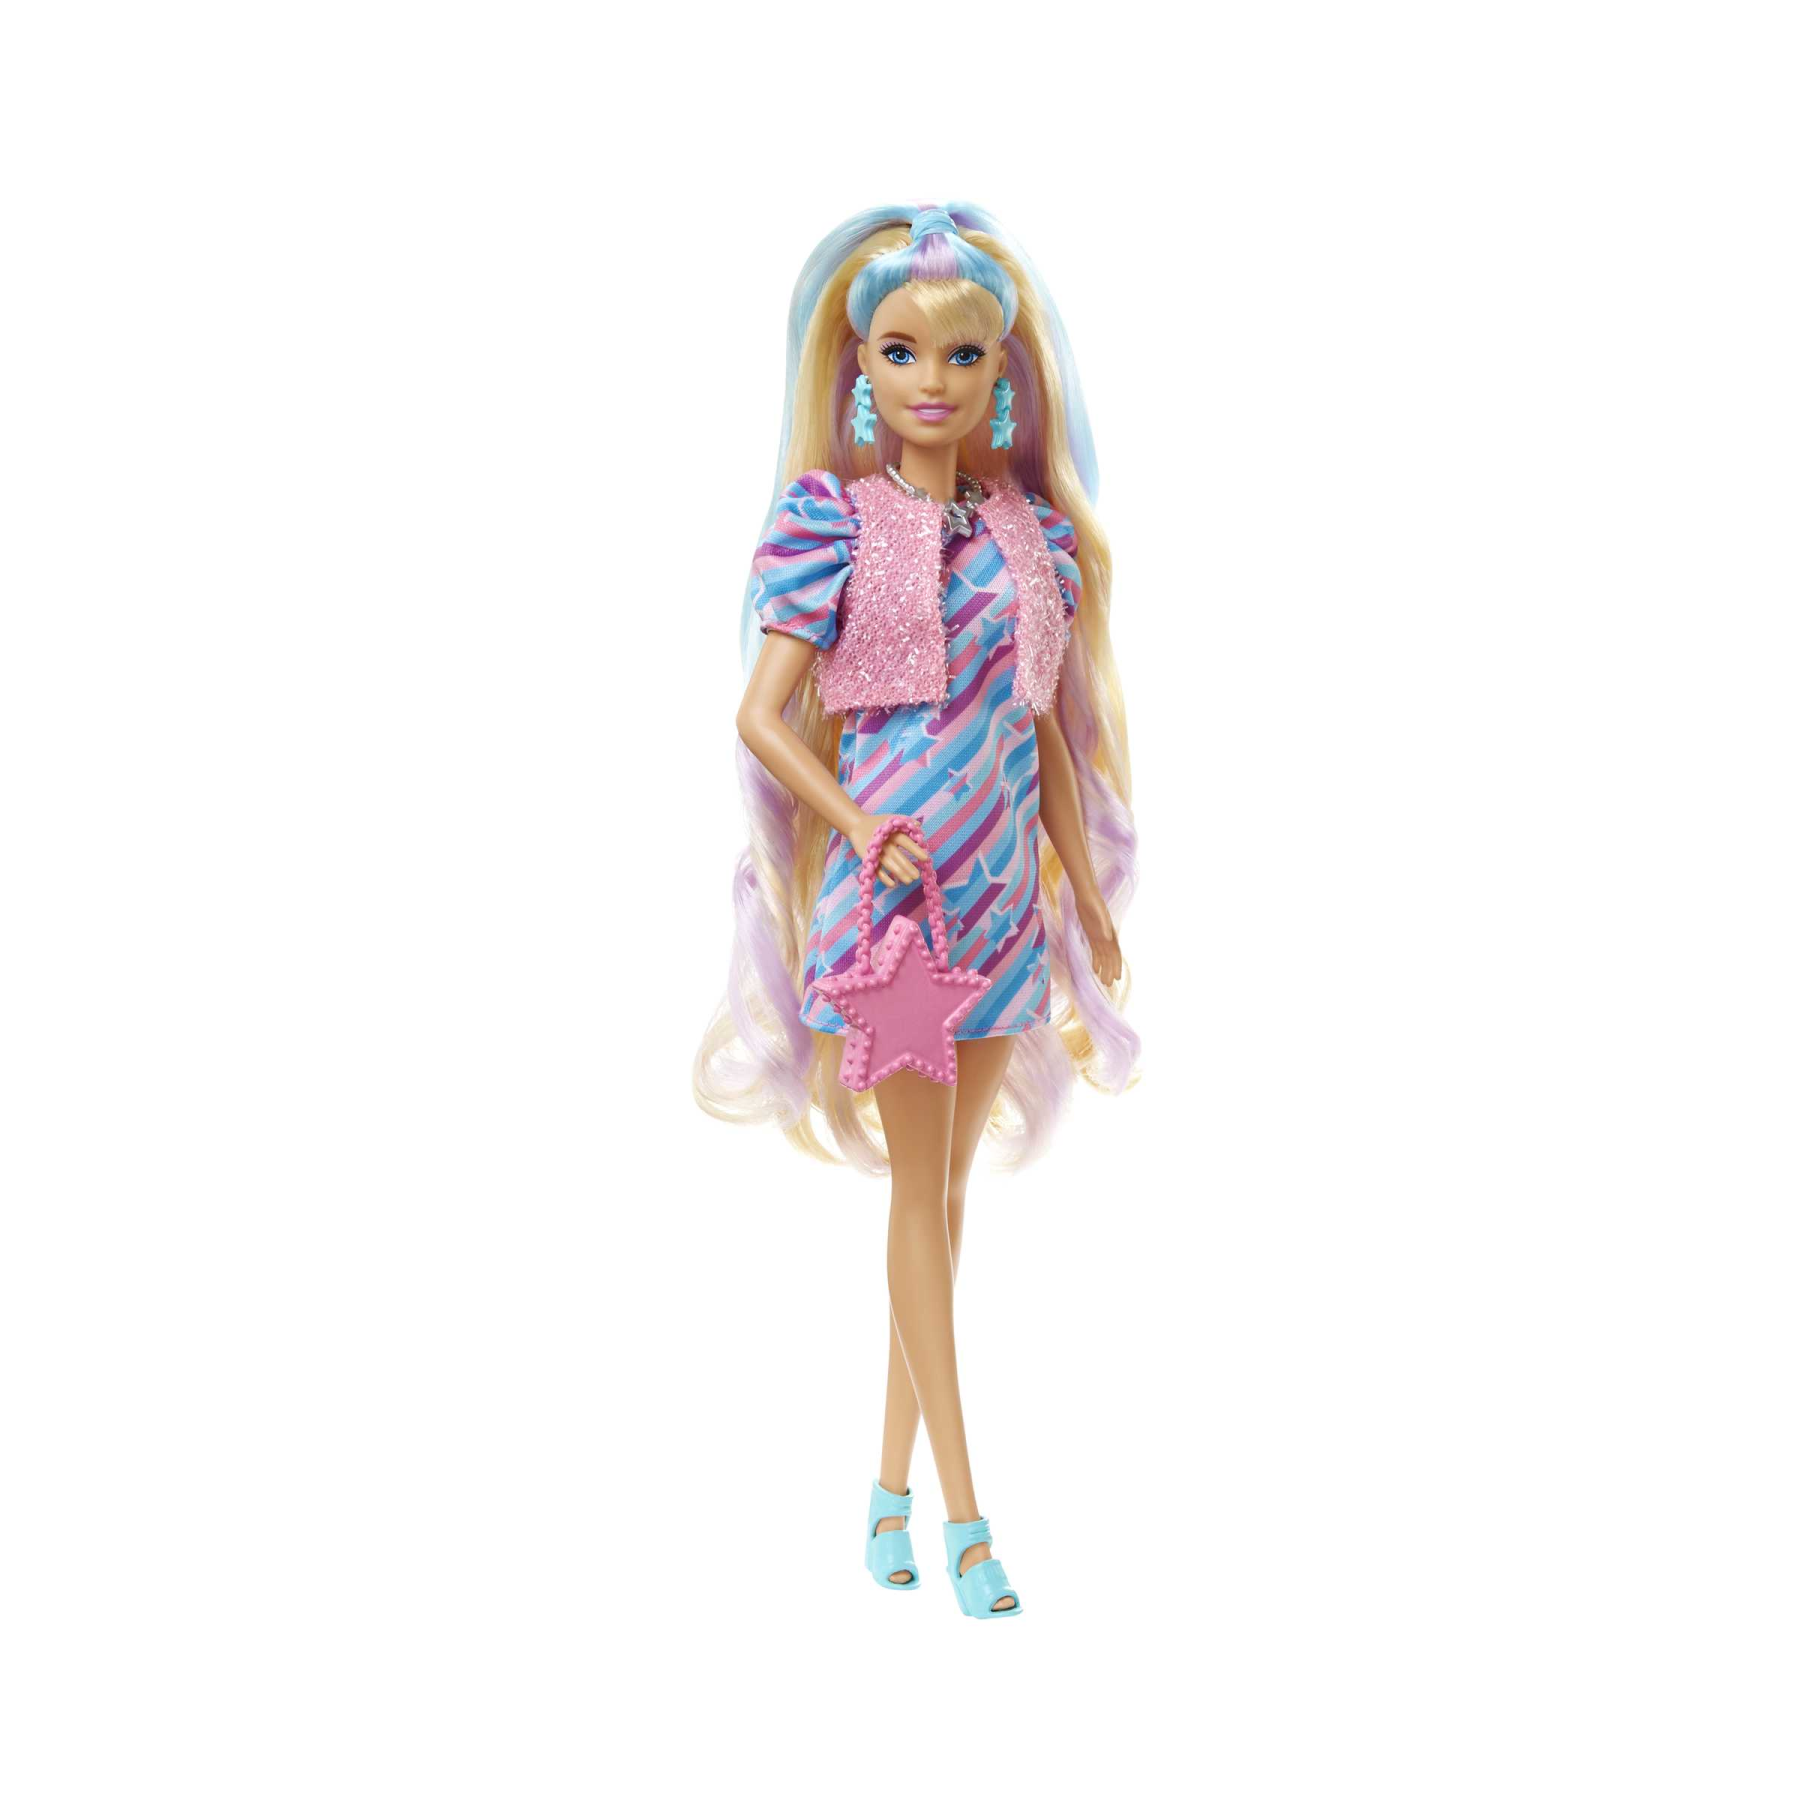 Barbie super chioma bambola con abito a stelle, capelli fantasia lunghi 21,6 cm, abito, 15 accessori alla moda (8 con effetto cambia colore), per bambini dai 3 anni in su - Barbie